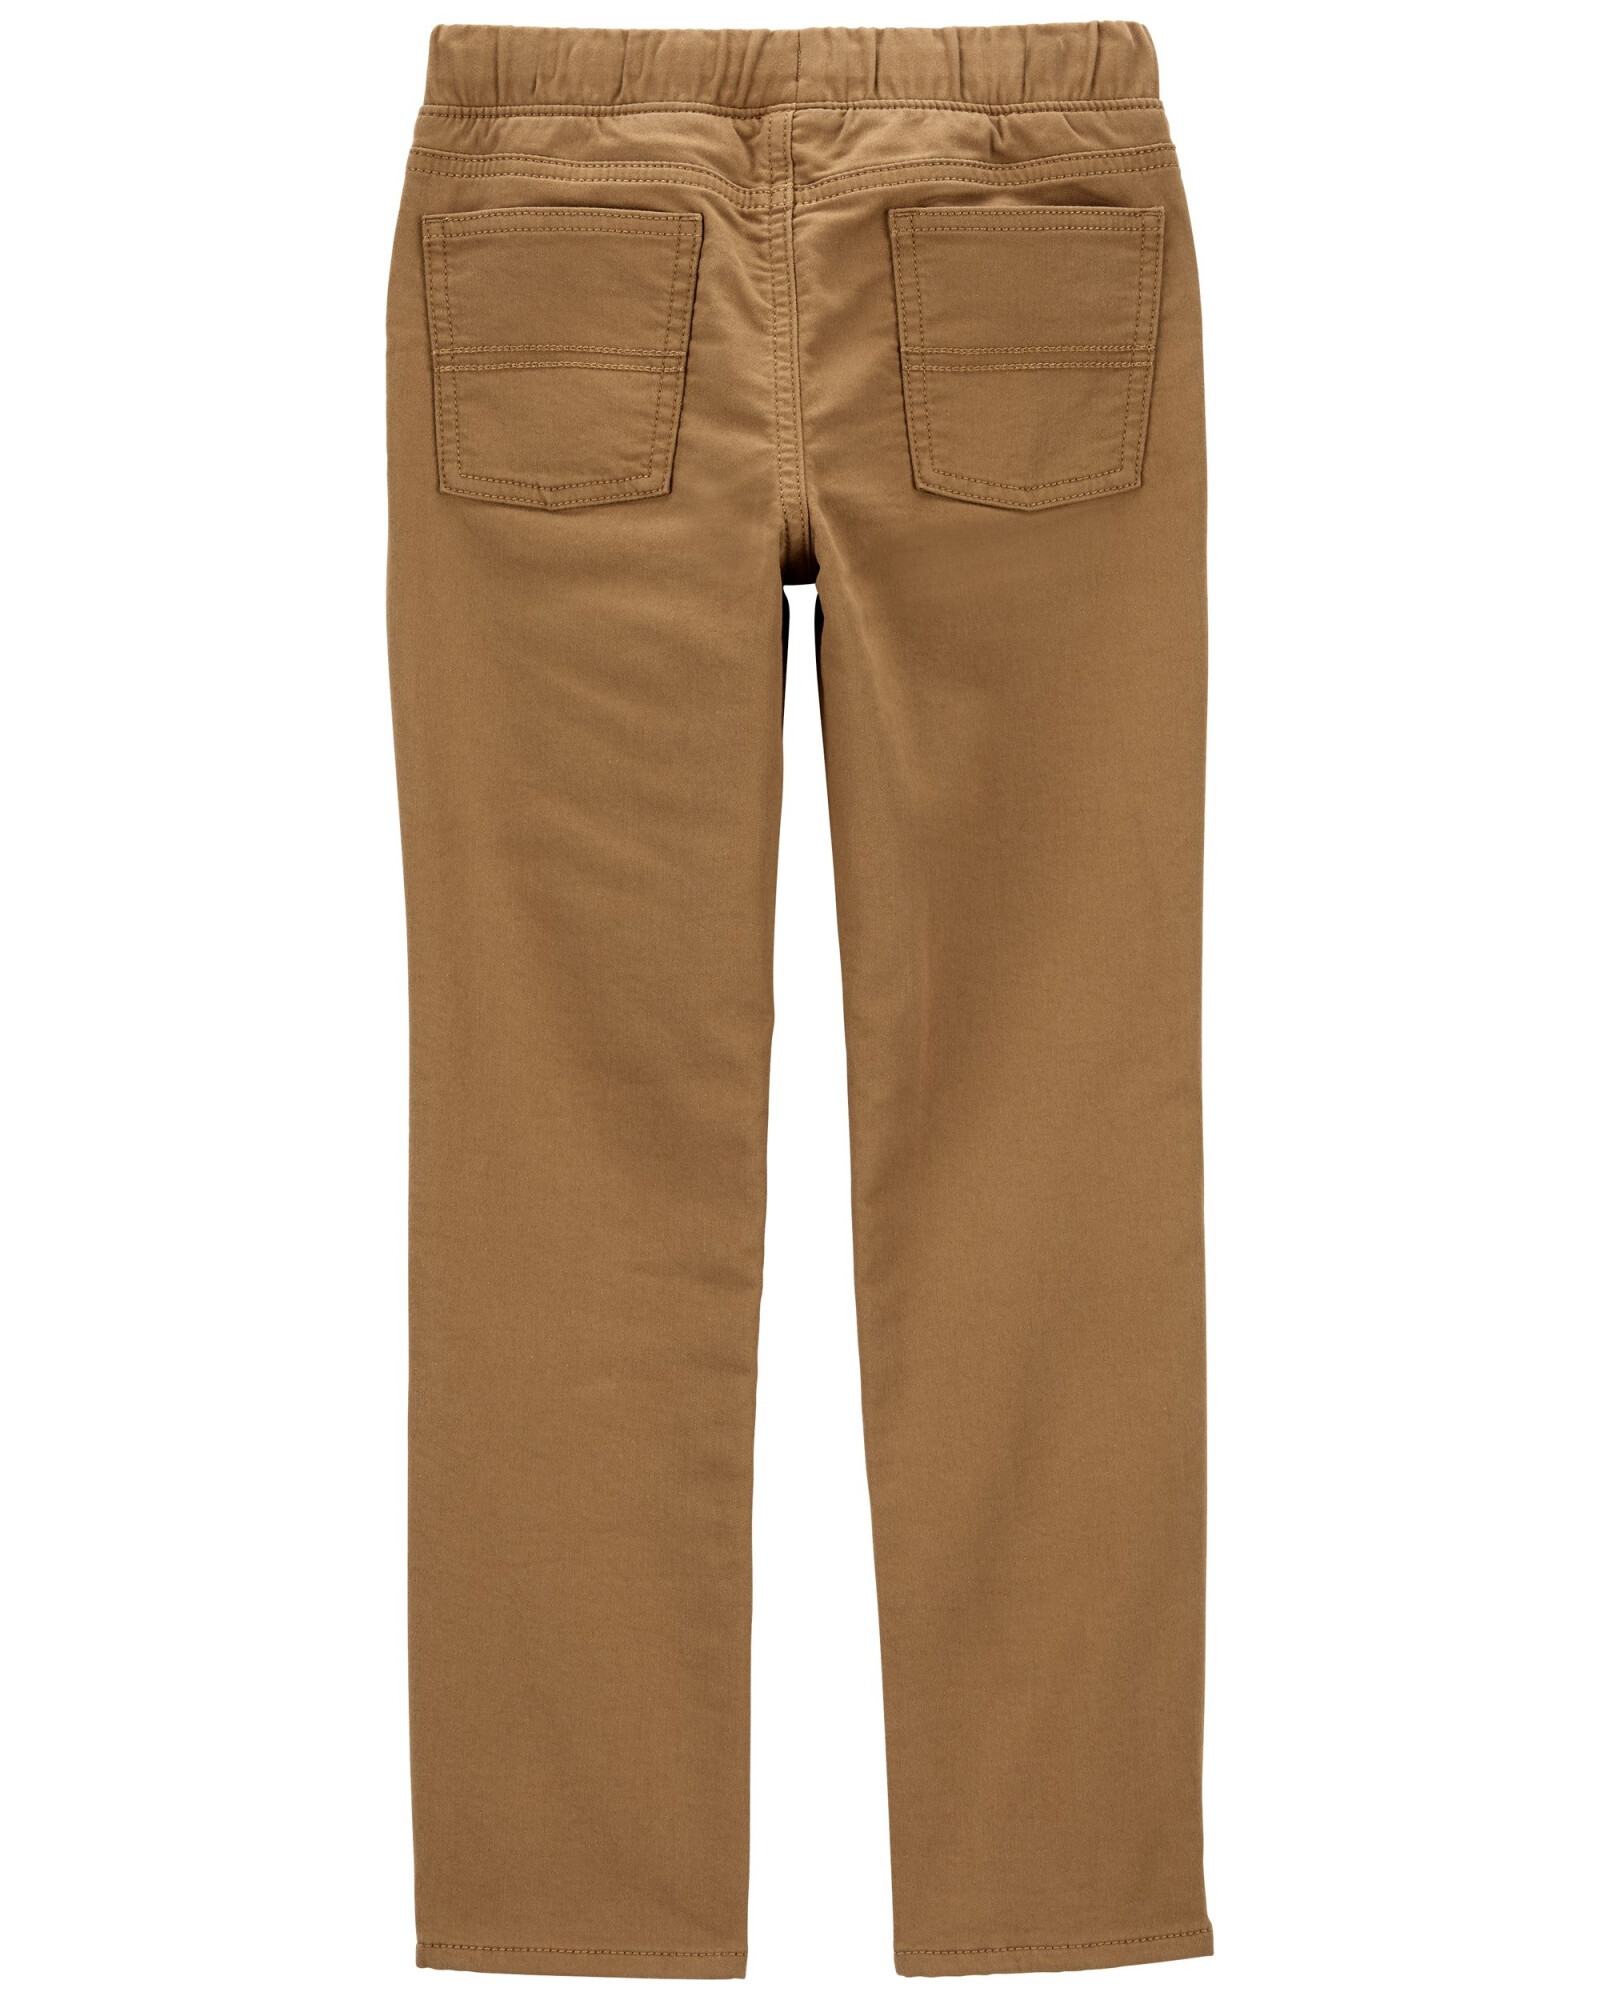 Pantalón en tejido dobby, color khaki. Talles 6-8 Sin color